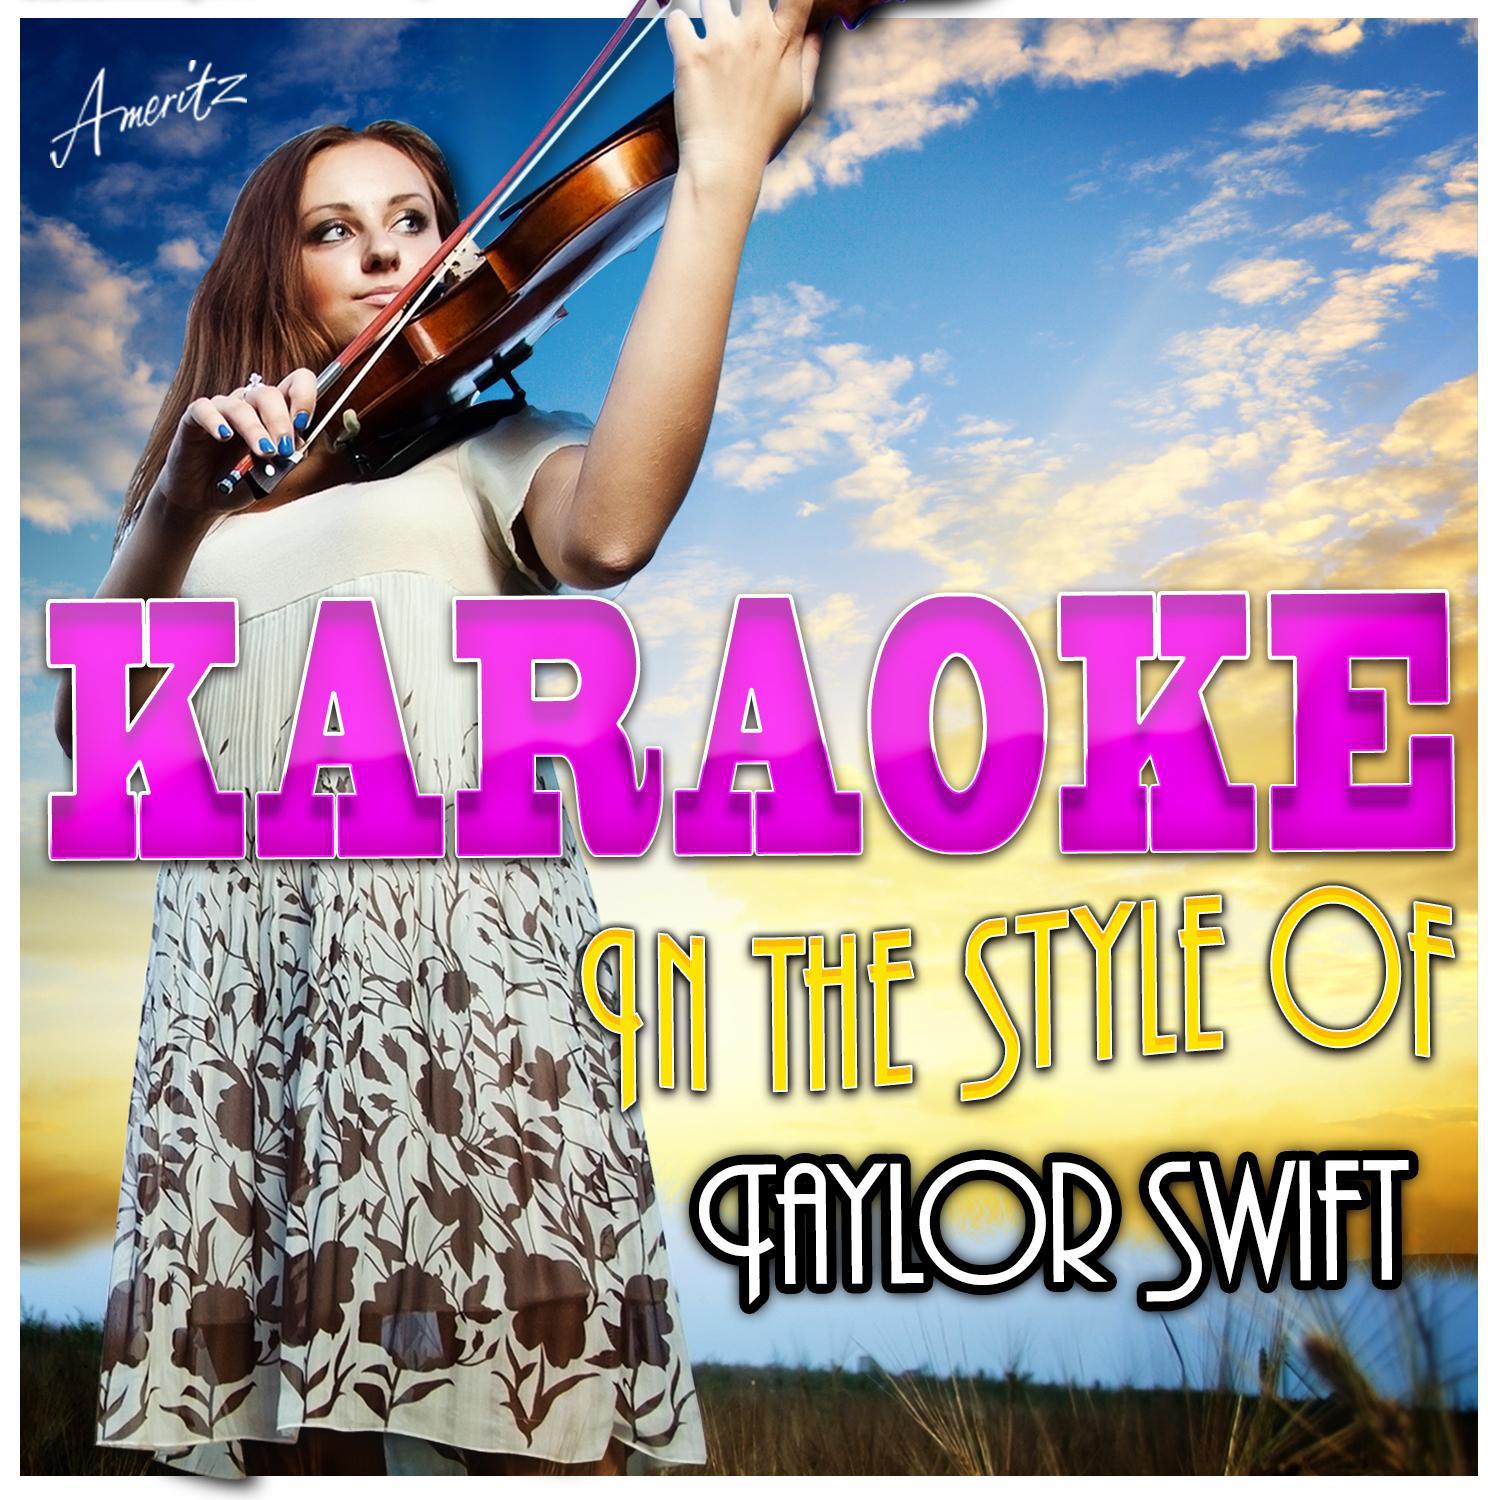 Karaoke - In the Style of Taylor Swift